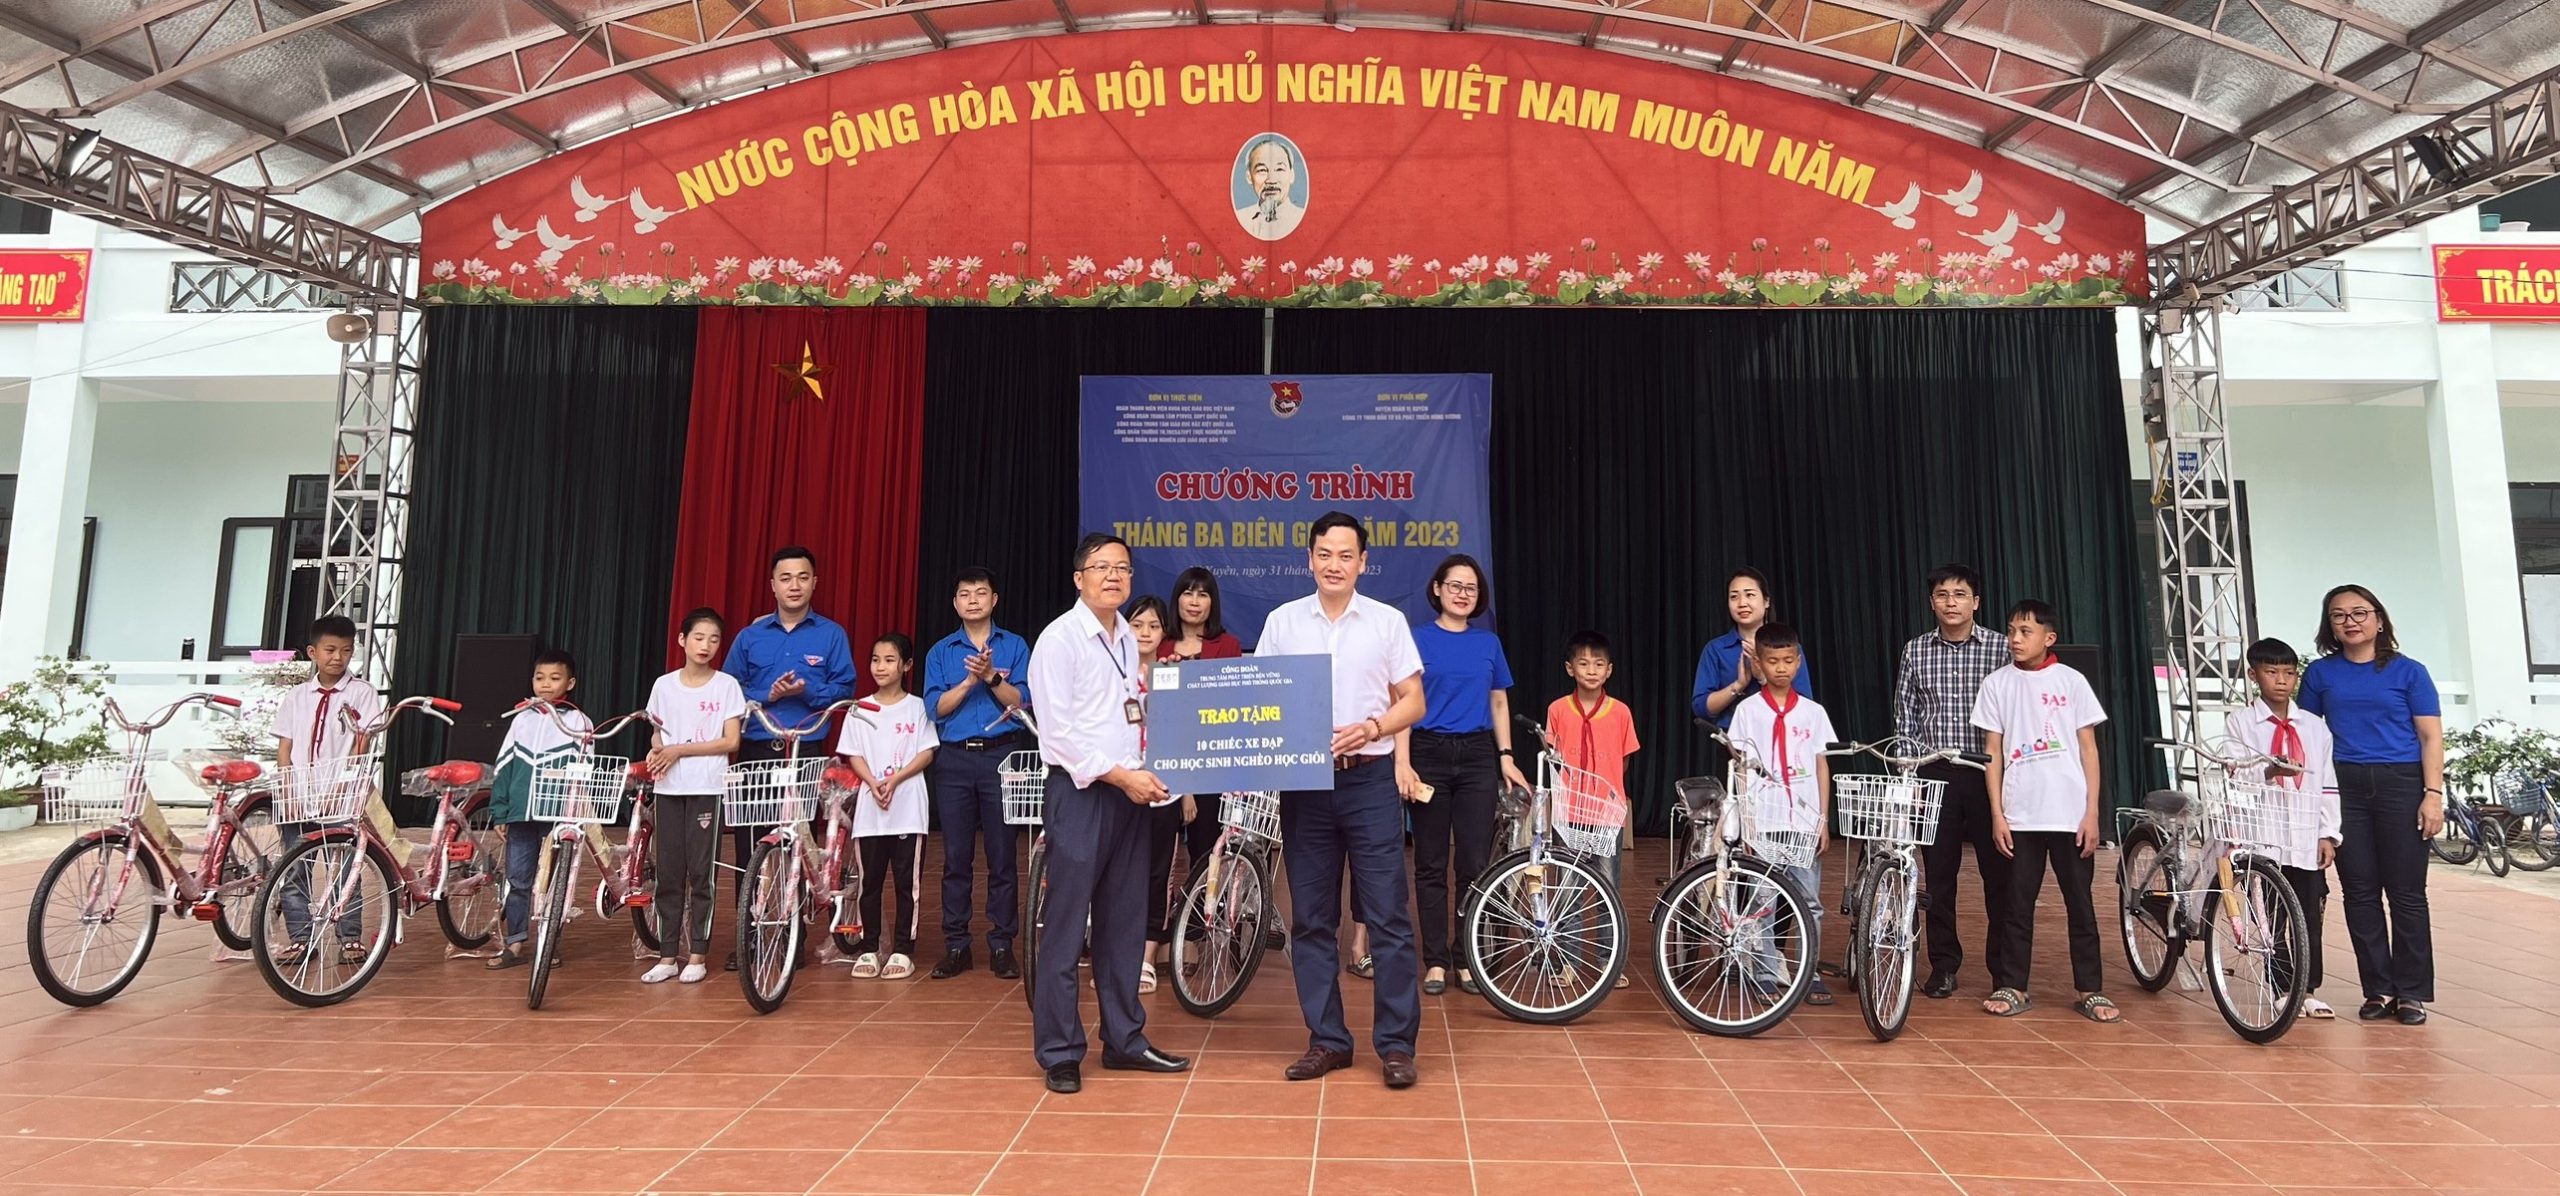 Chương trình “Tháng Ba Biên giới năm 2023” cho học sinh khó khăn tại Tỉnh Hà Giang